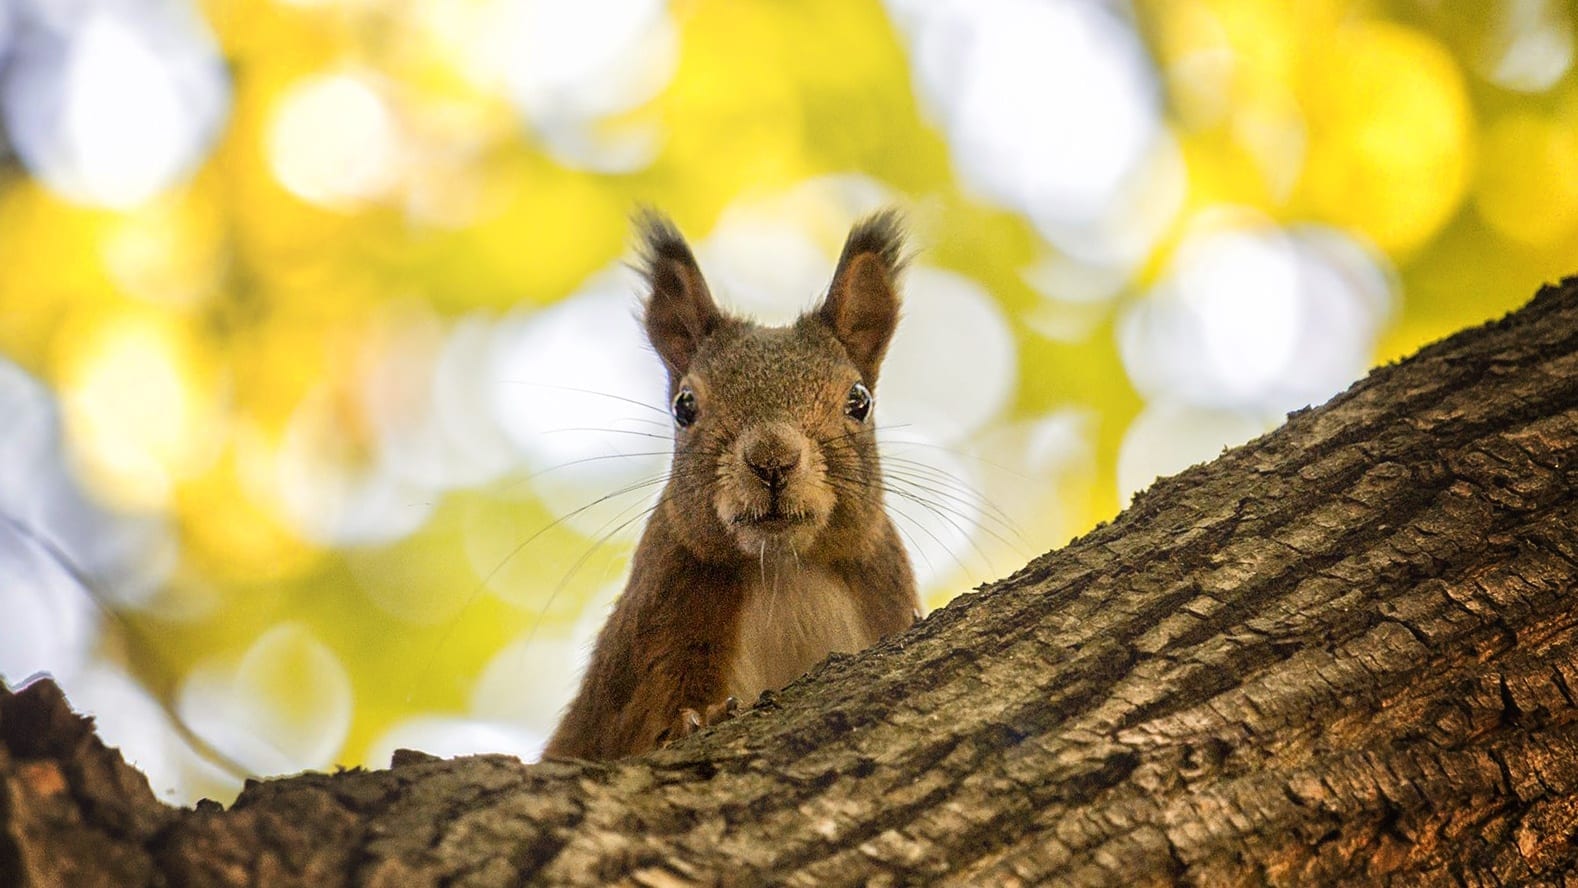 Budapesti őszi fotózás közben mókusokkal is találkozhatsz a Margitszigeten